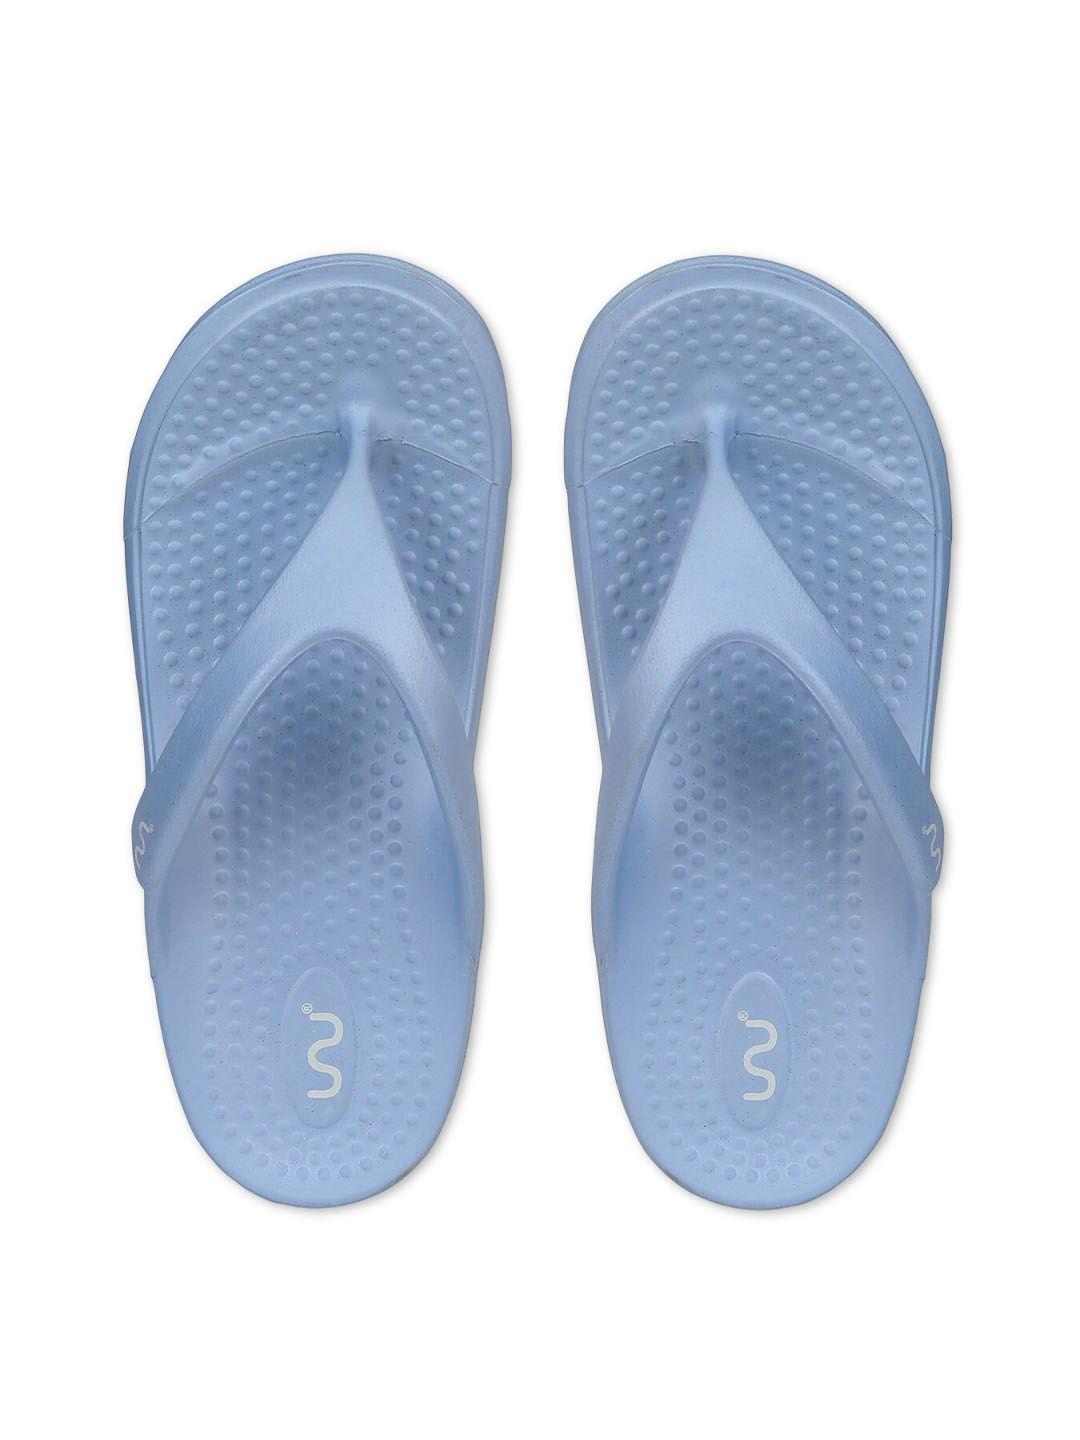 doubleu women blue rubber thong flip-flops